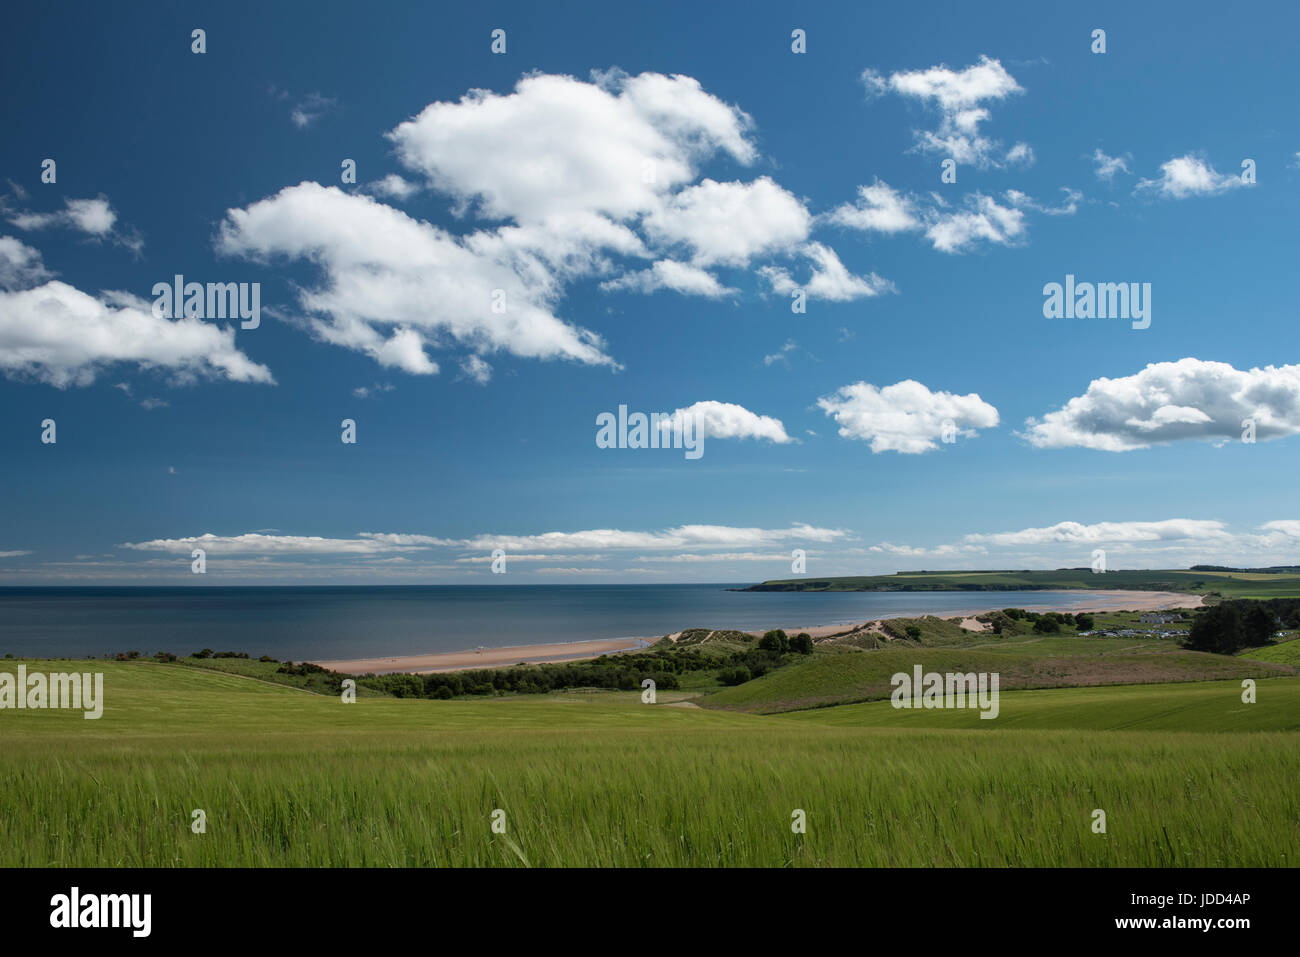 Lunan Bay, Angus, Scotland Stock Photo